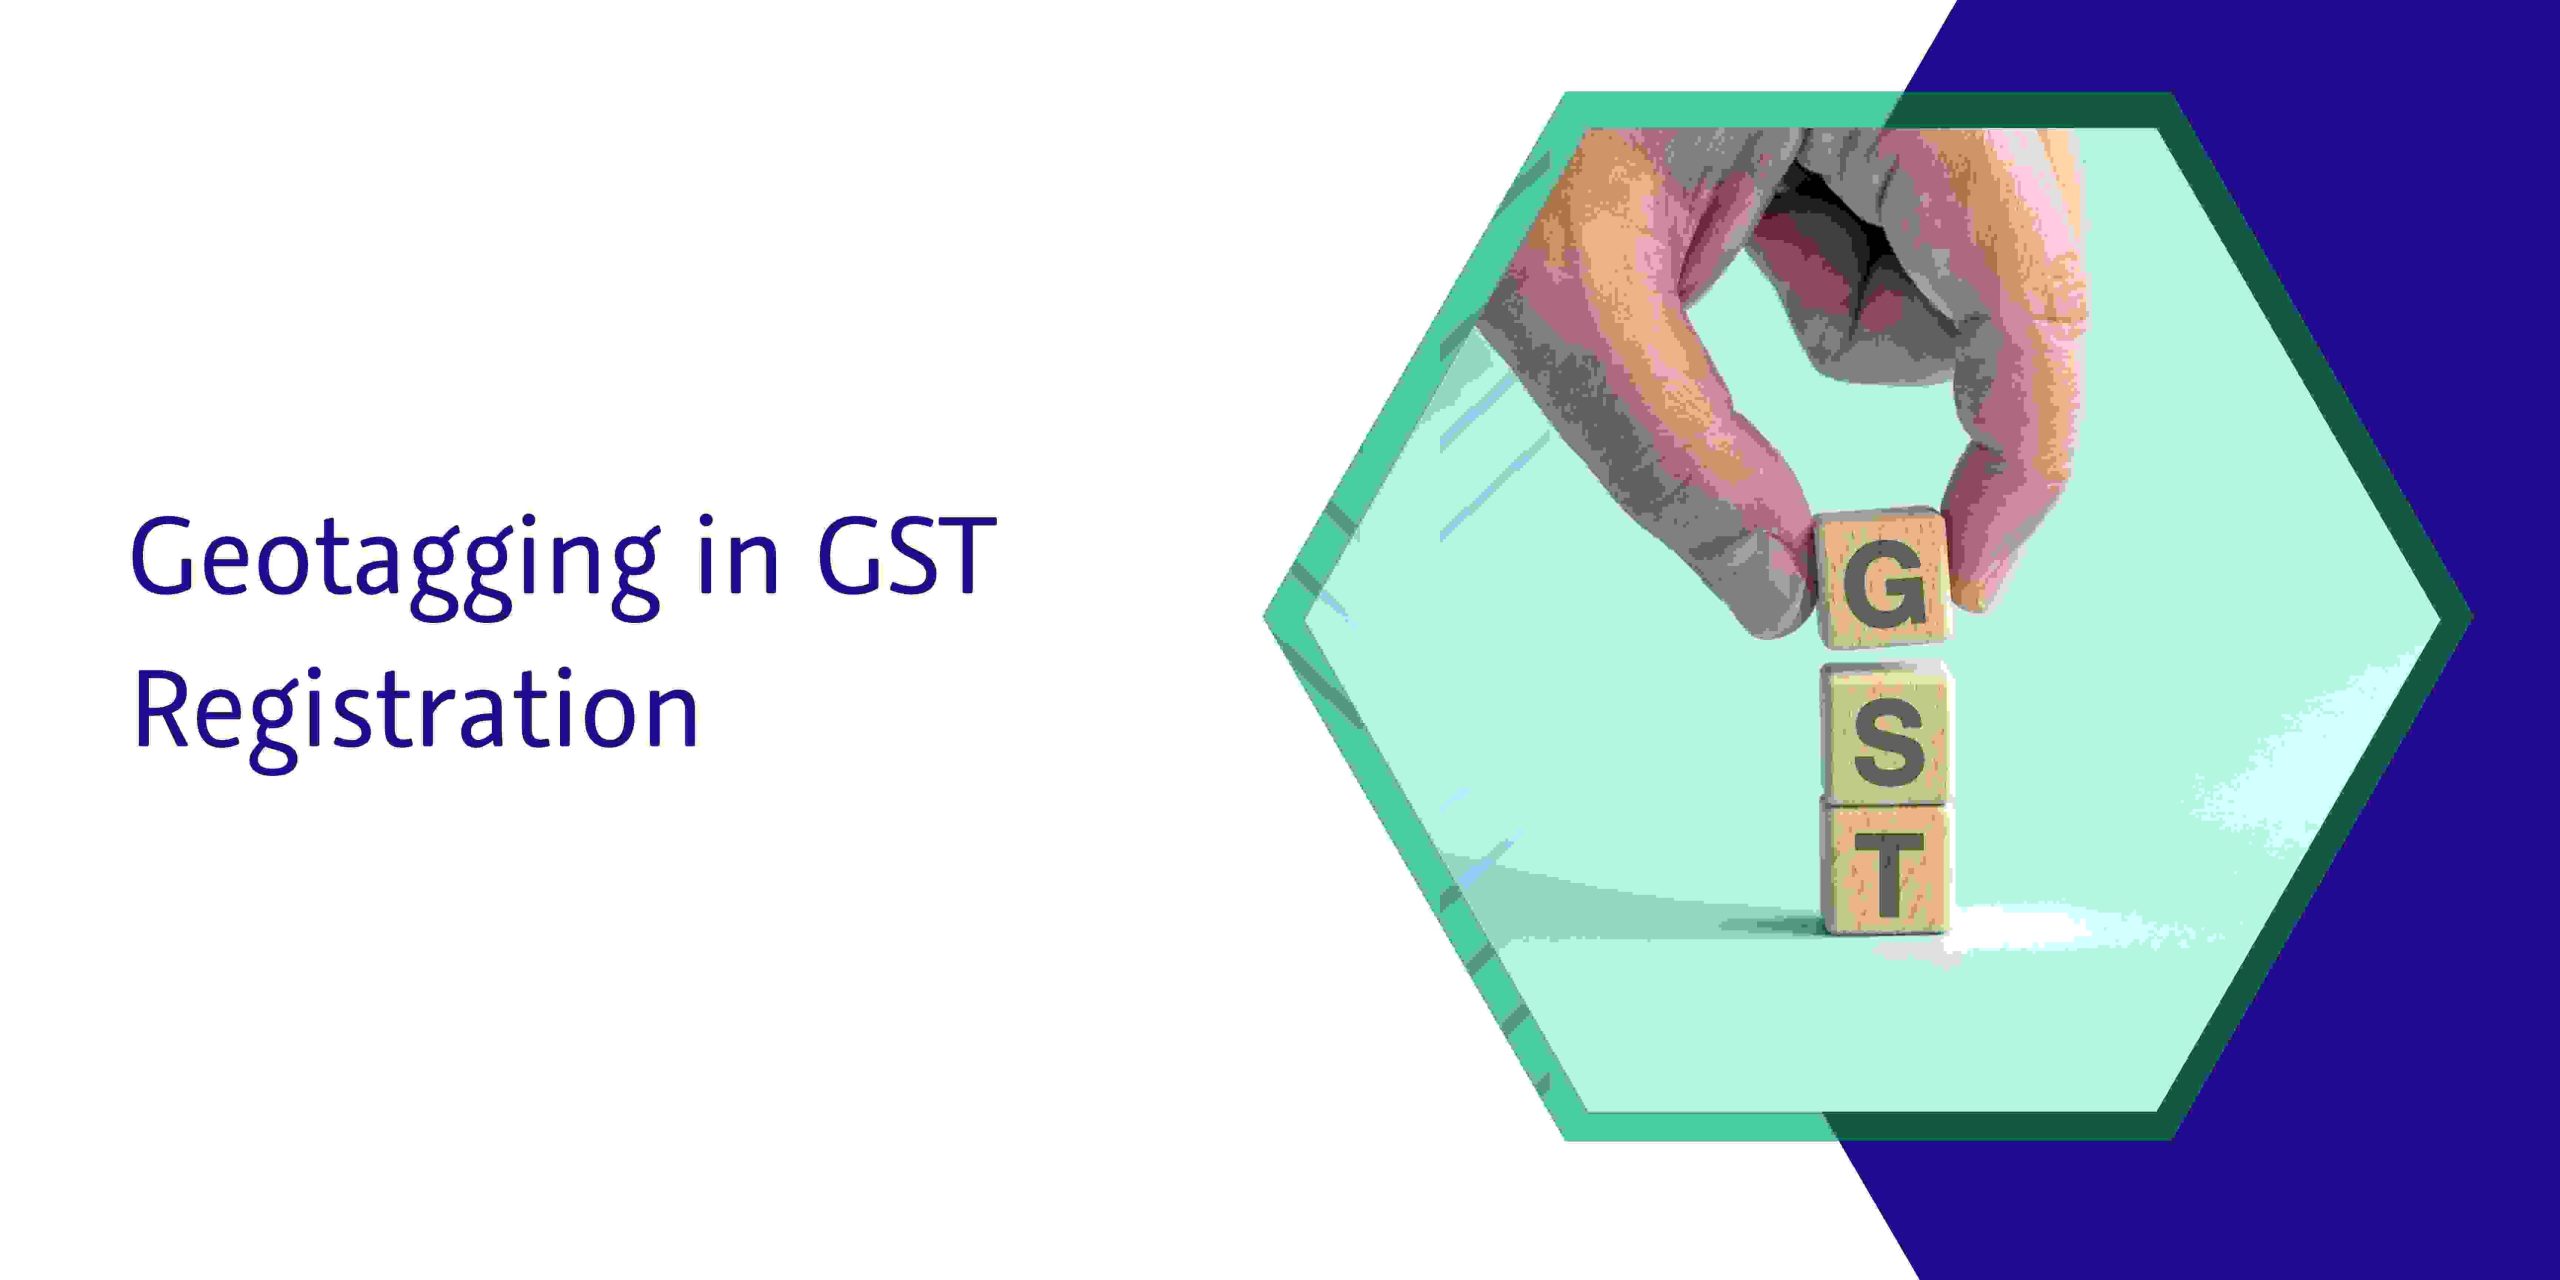 CaptainBiz: Geotagging in GST Registration